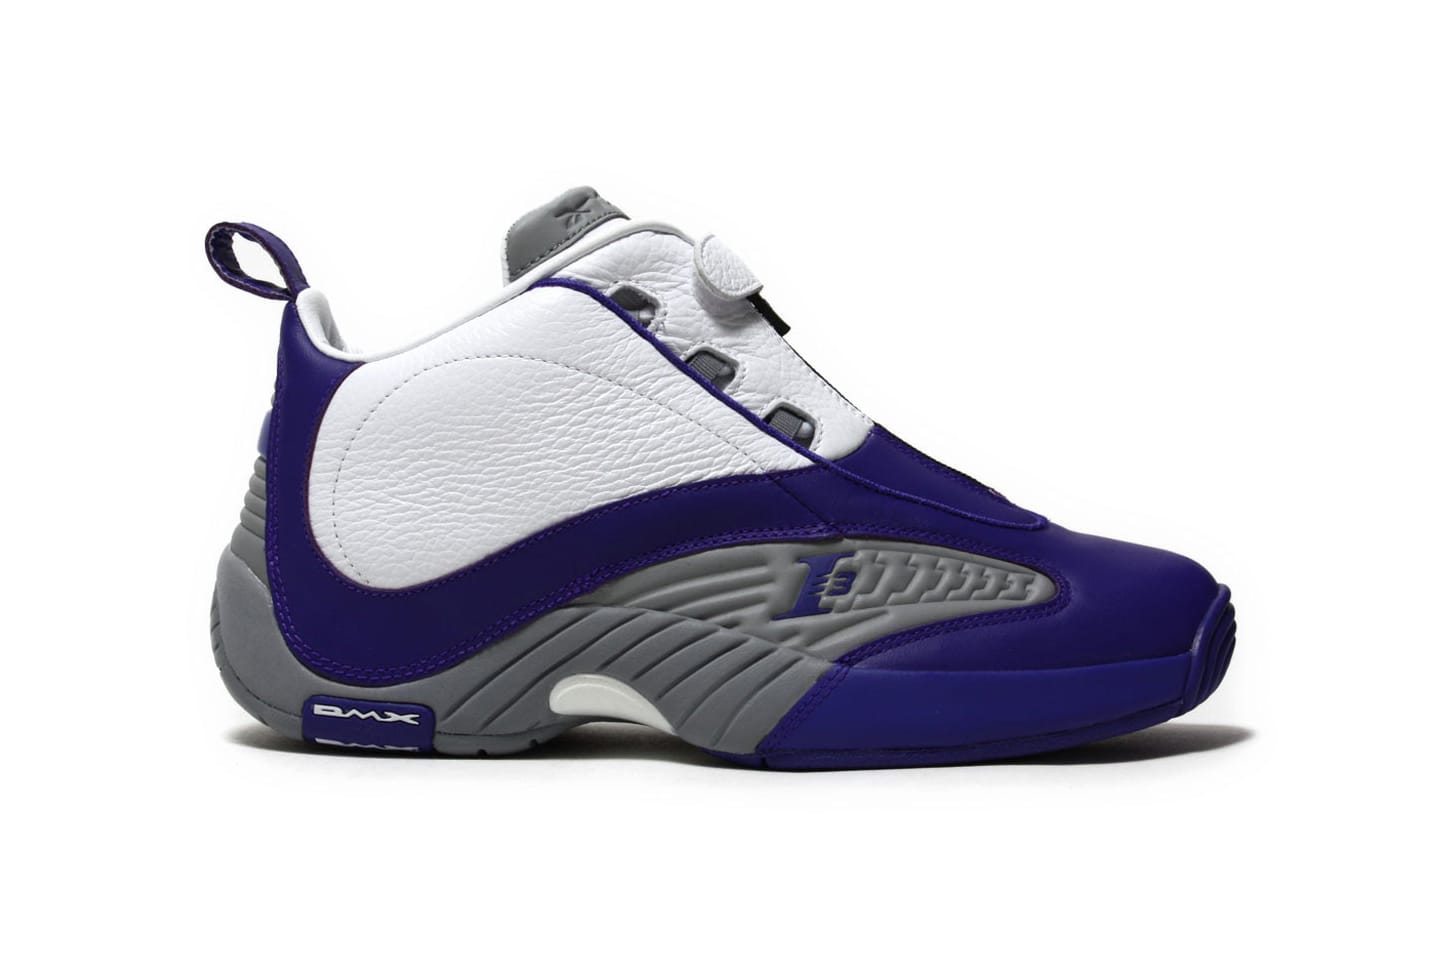 iverson shoes 2003